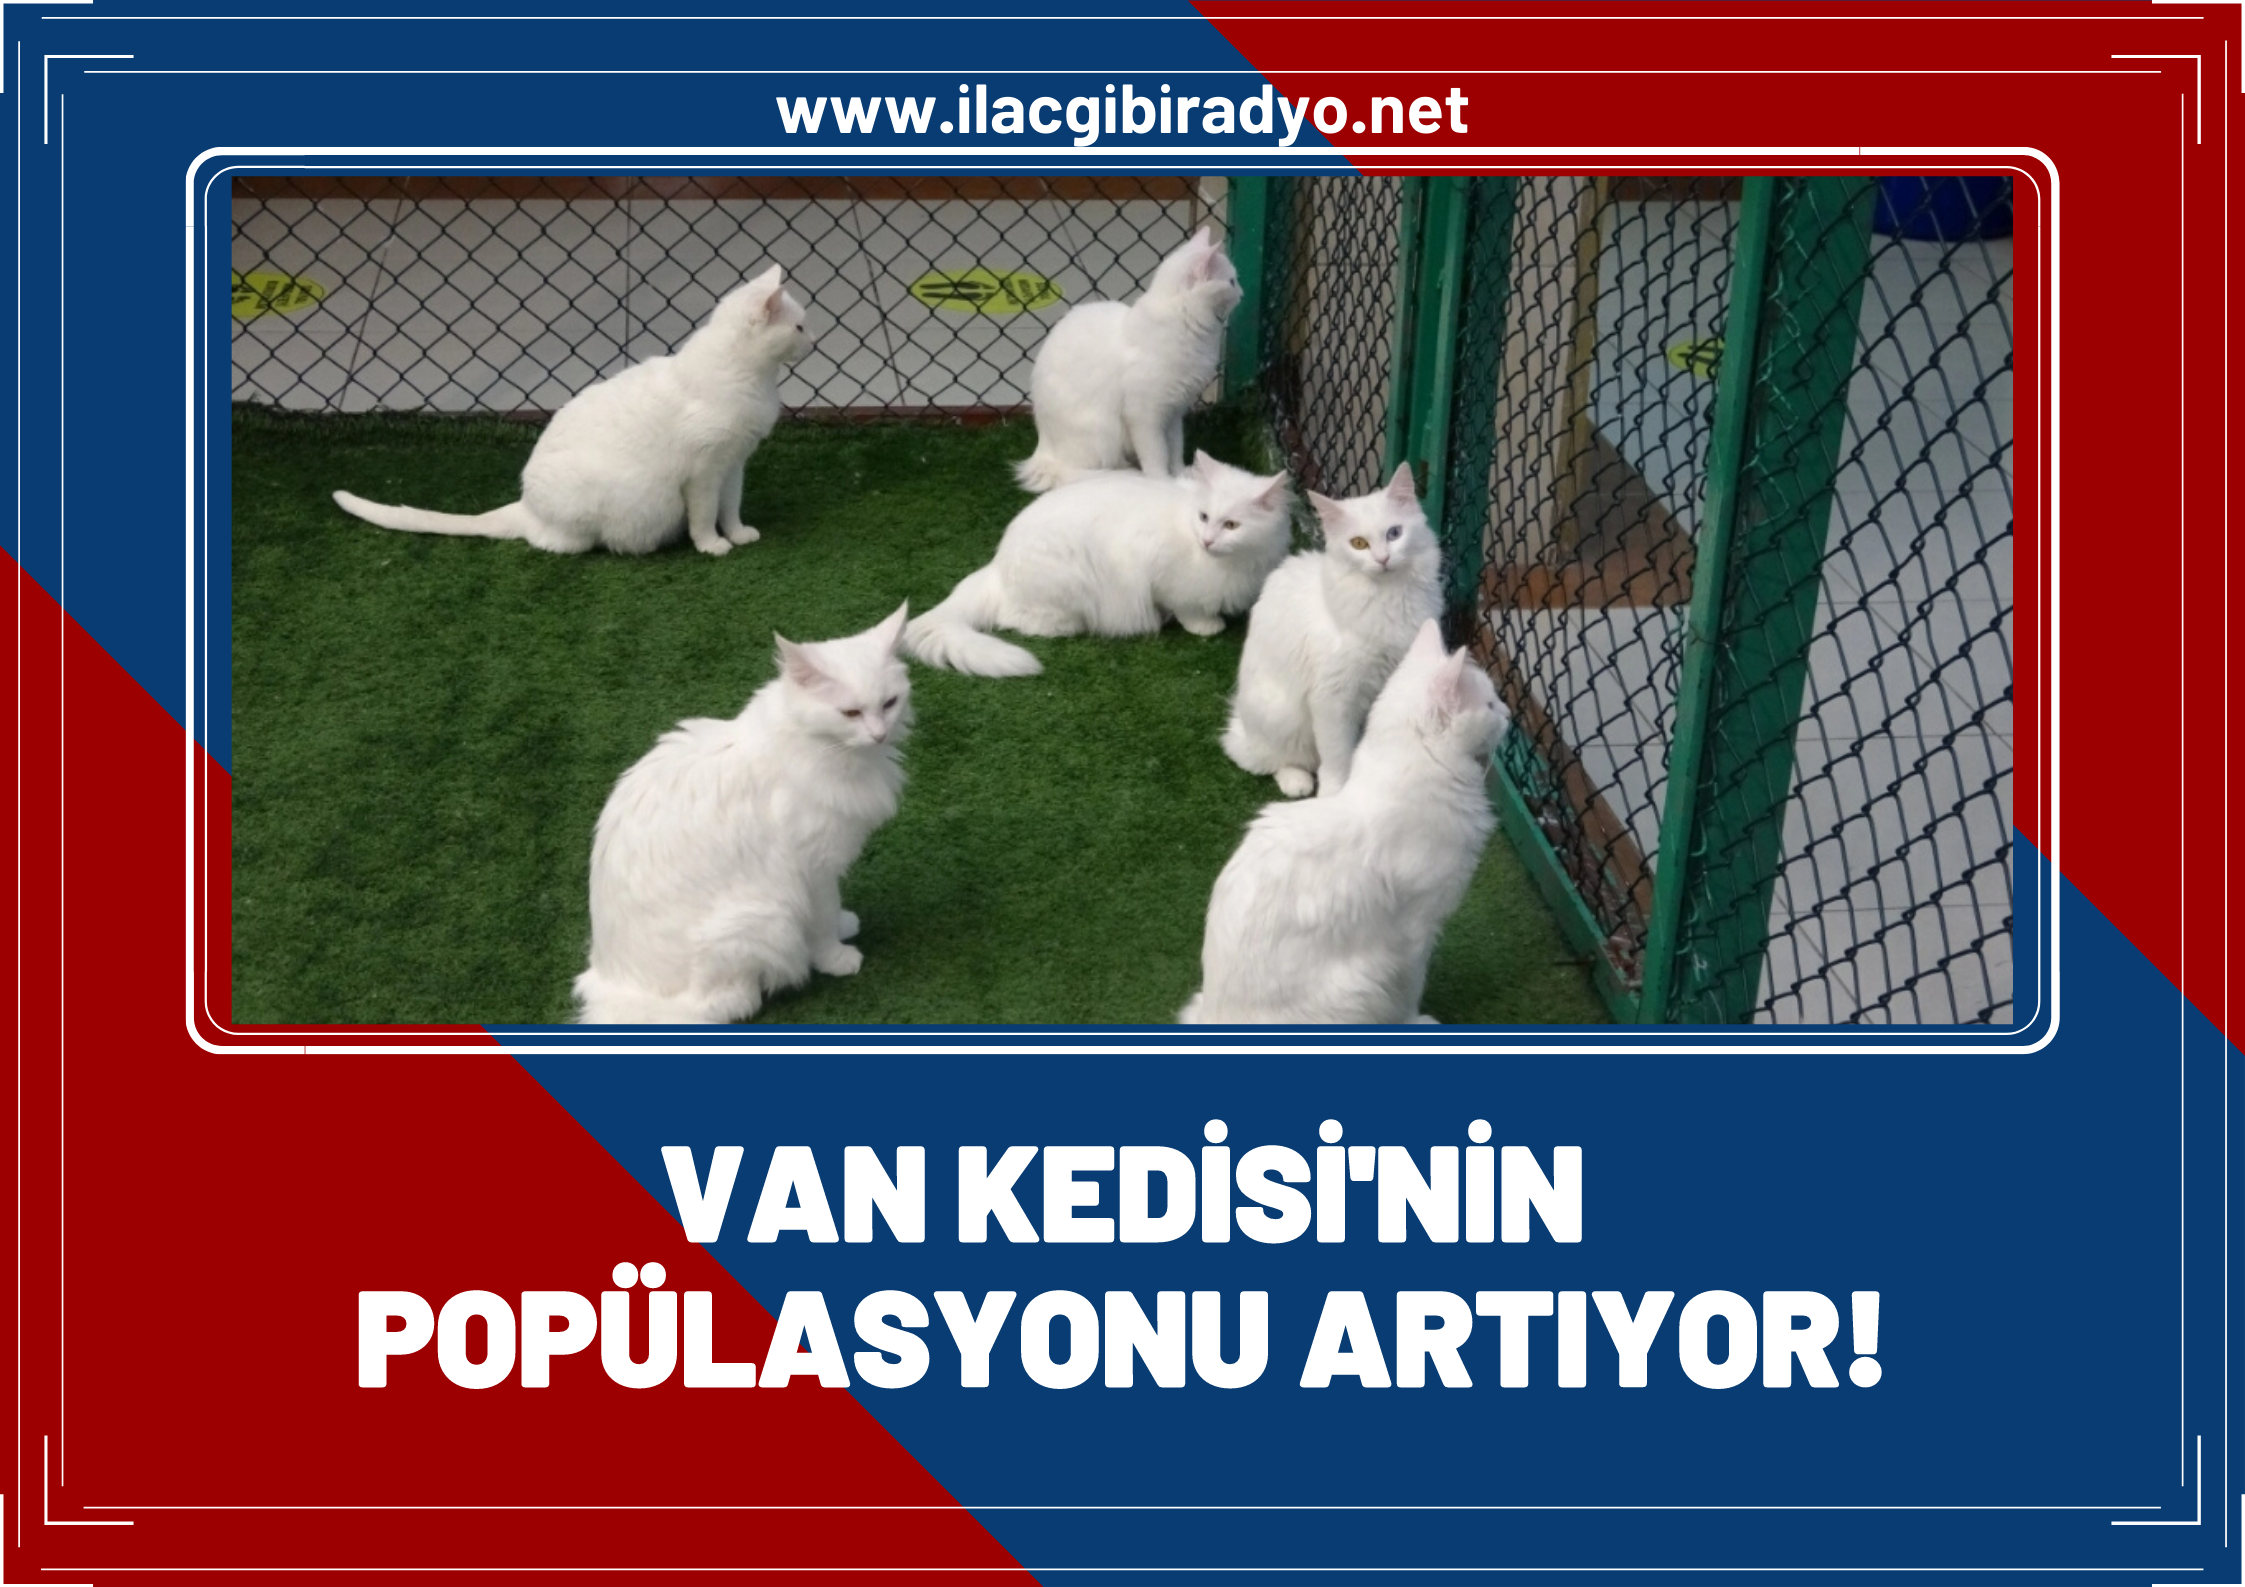 Van kedisi’nin popülasyonu artıyor!